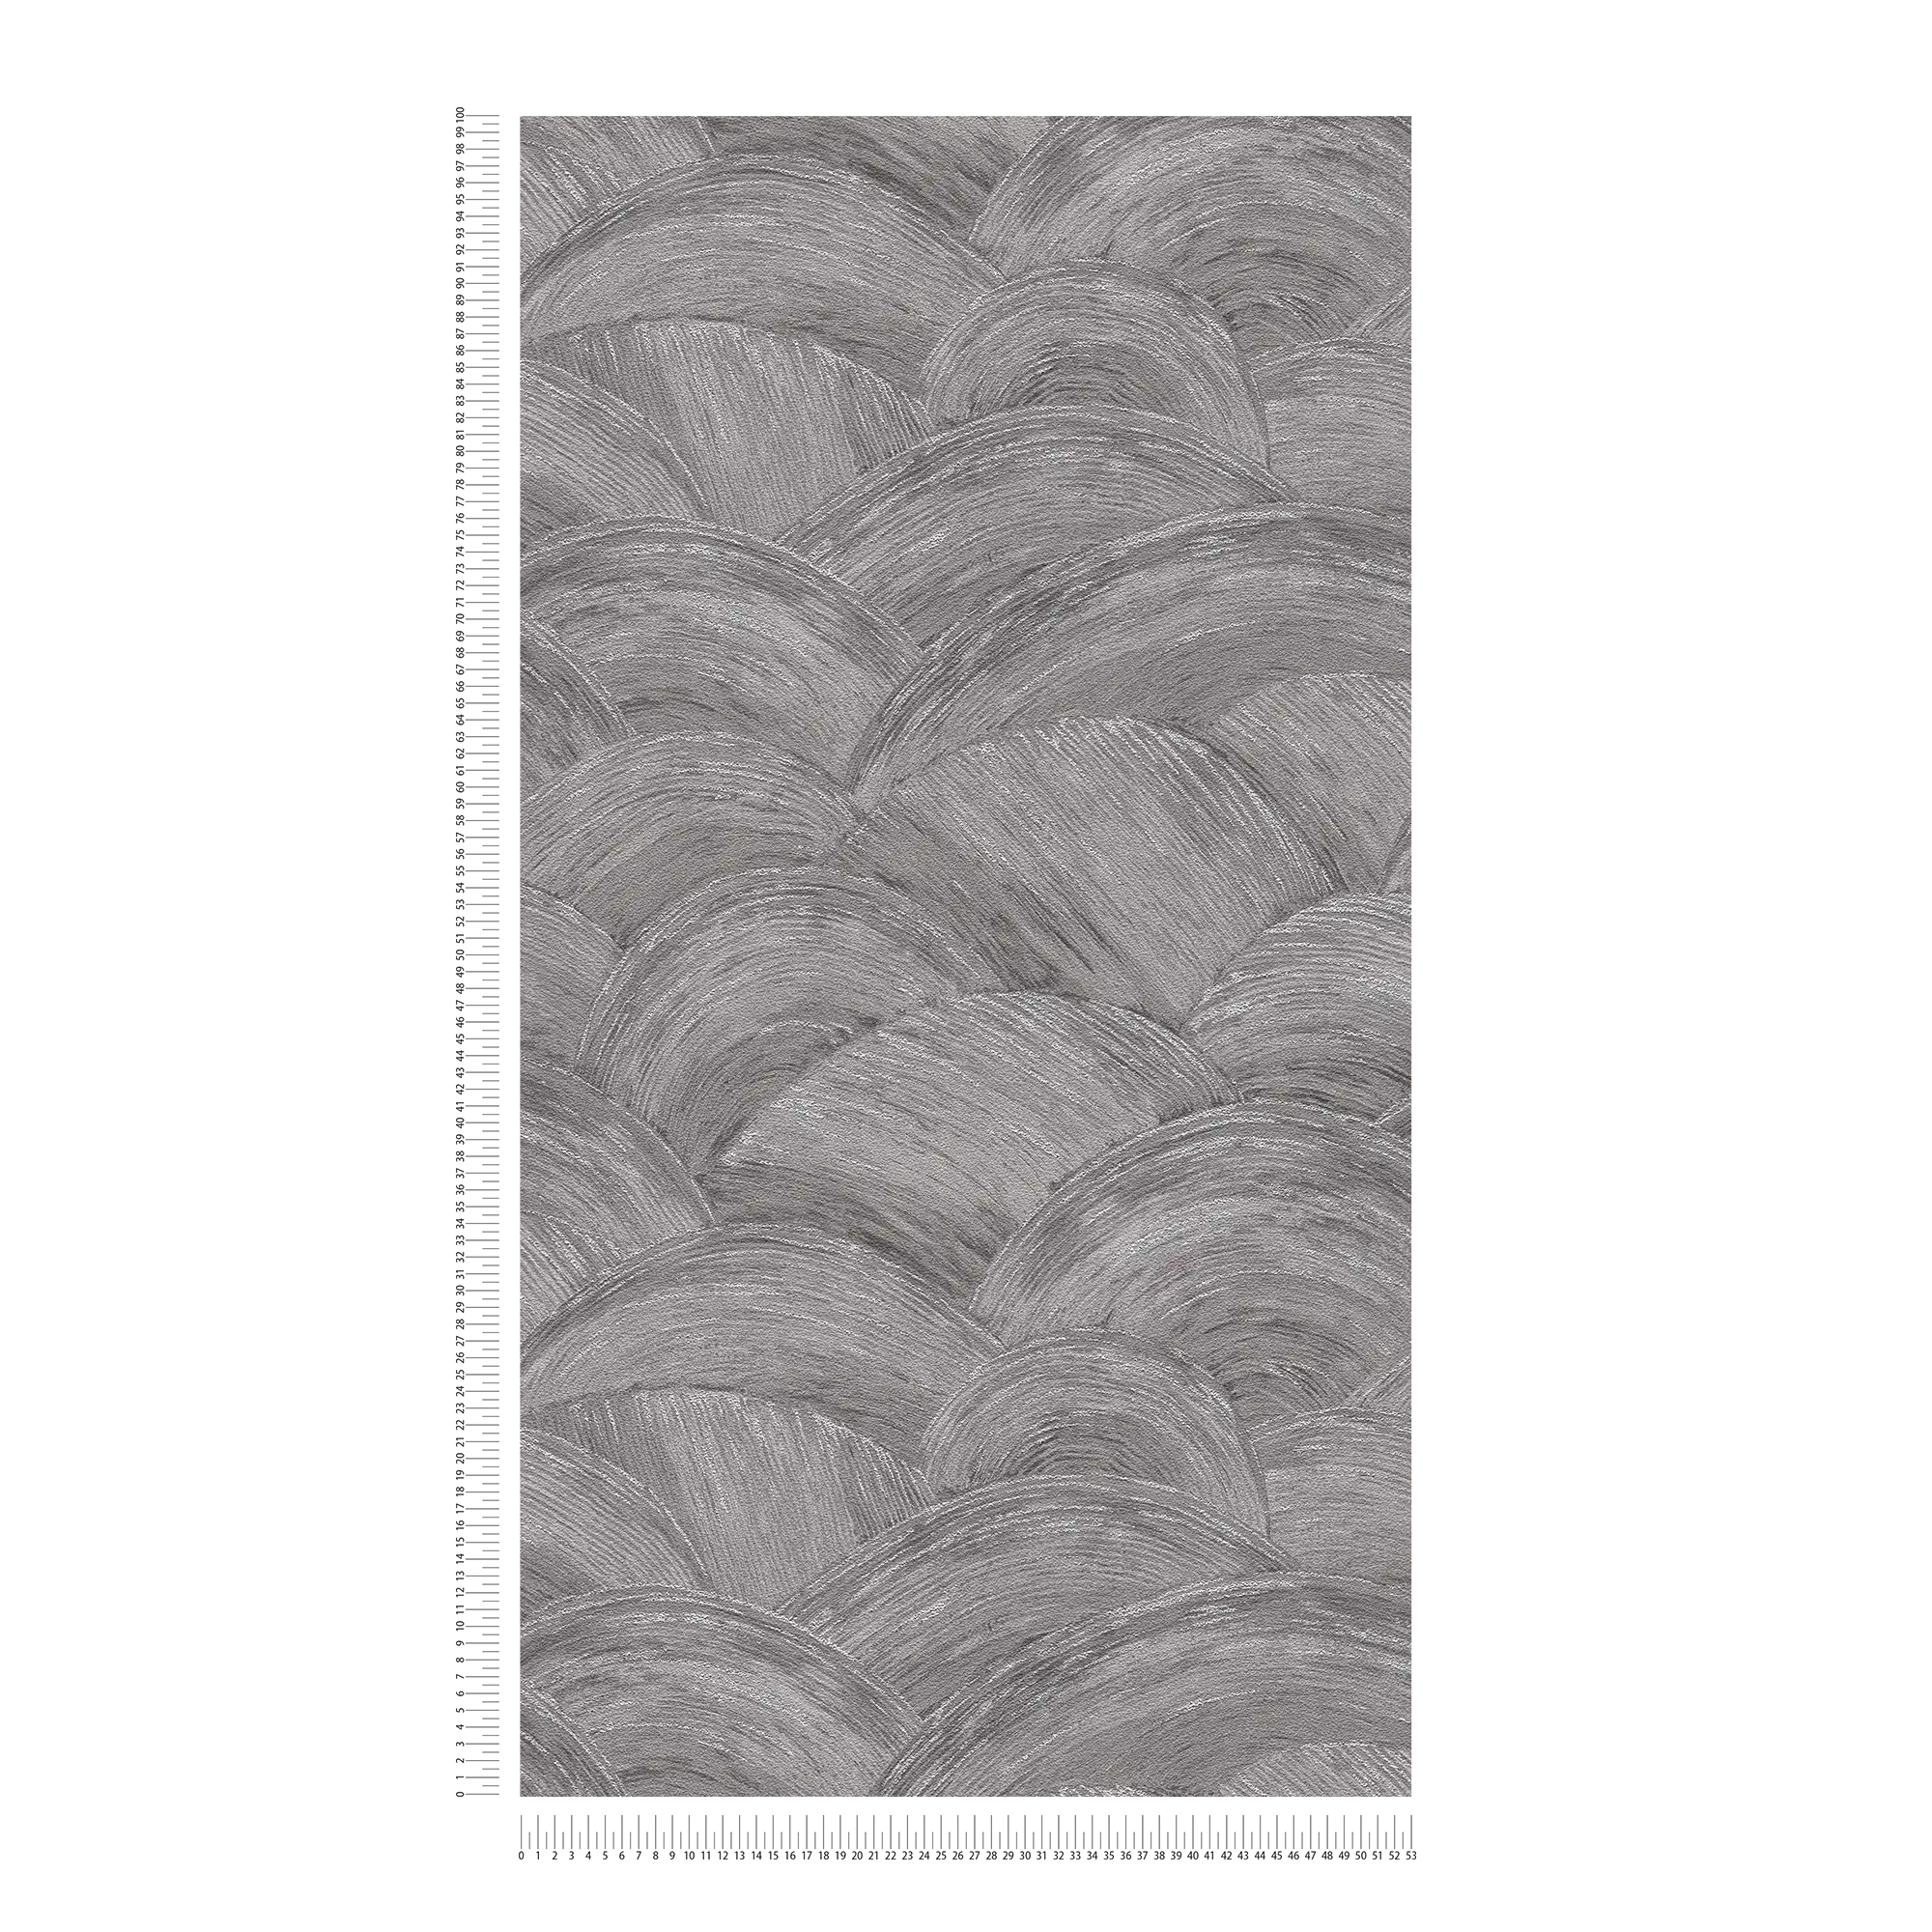             Carta da parati in tessuto non tessuto con aspetto ondulato e effetto lucido - grigio, argento
        